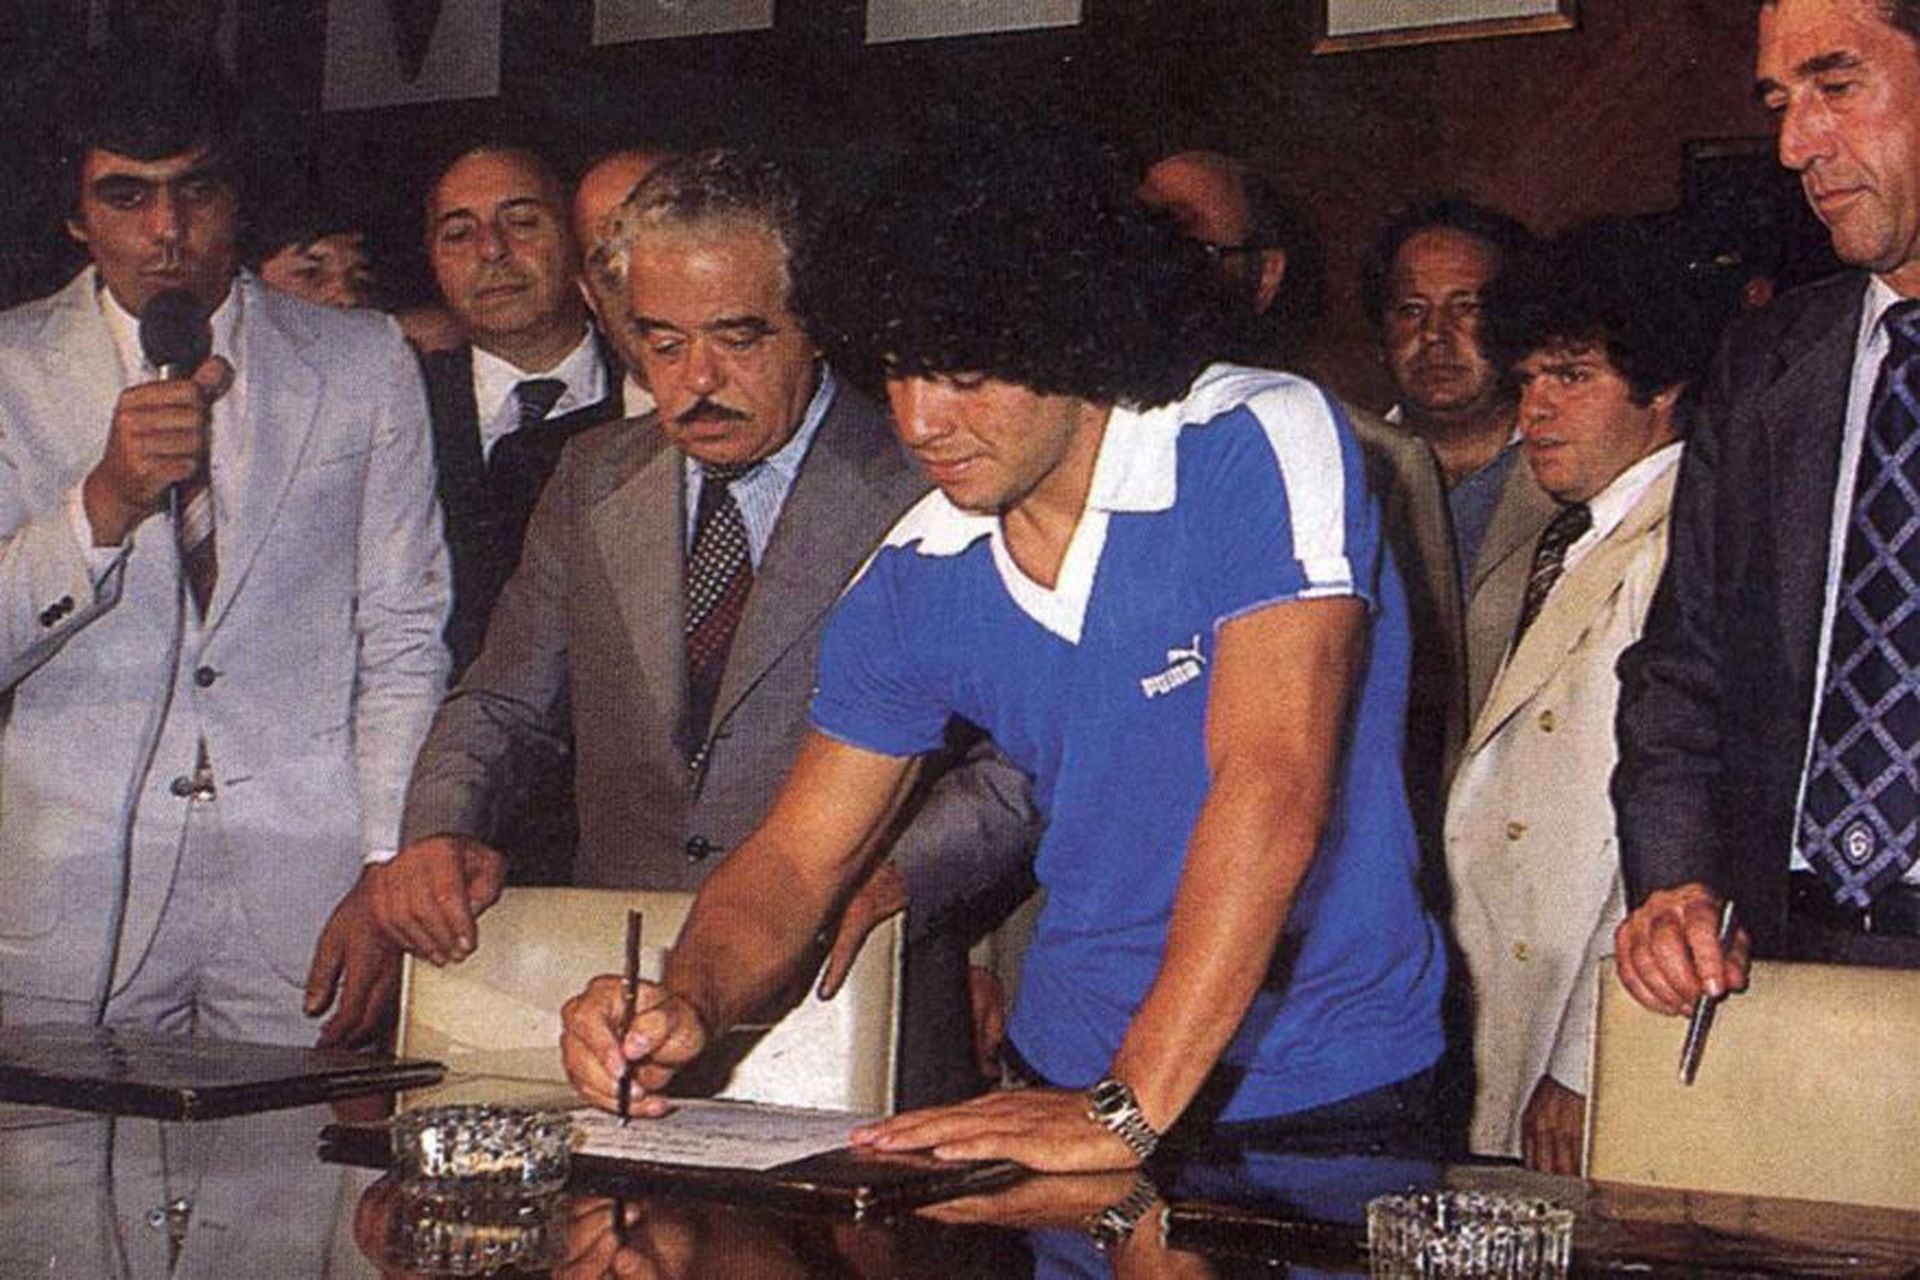 Maradona firma su contrato con Boca, en febrero de 1981. Viste una chomba azul con vivos blancos. En la serie, cuando ocurre este hecho tan visto, aparece de traje.